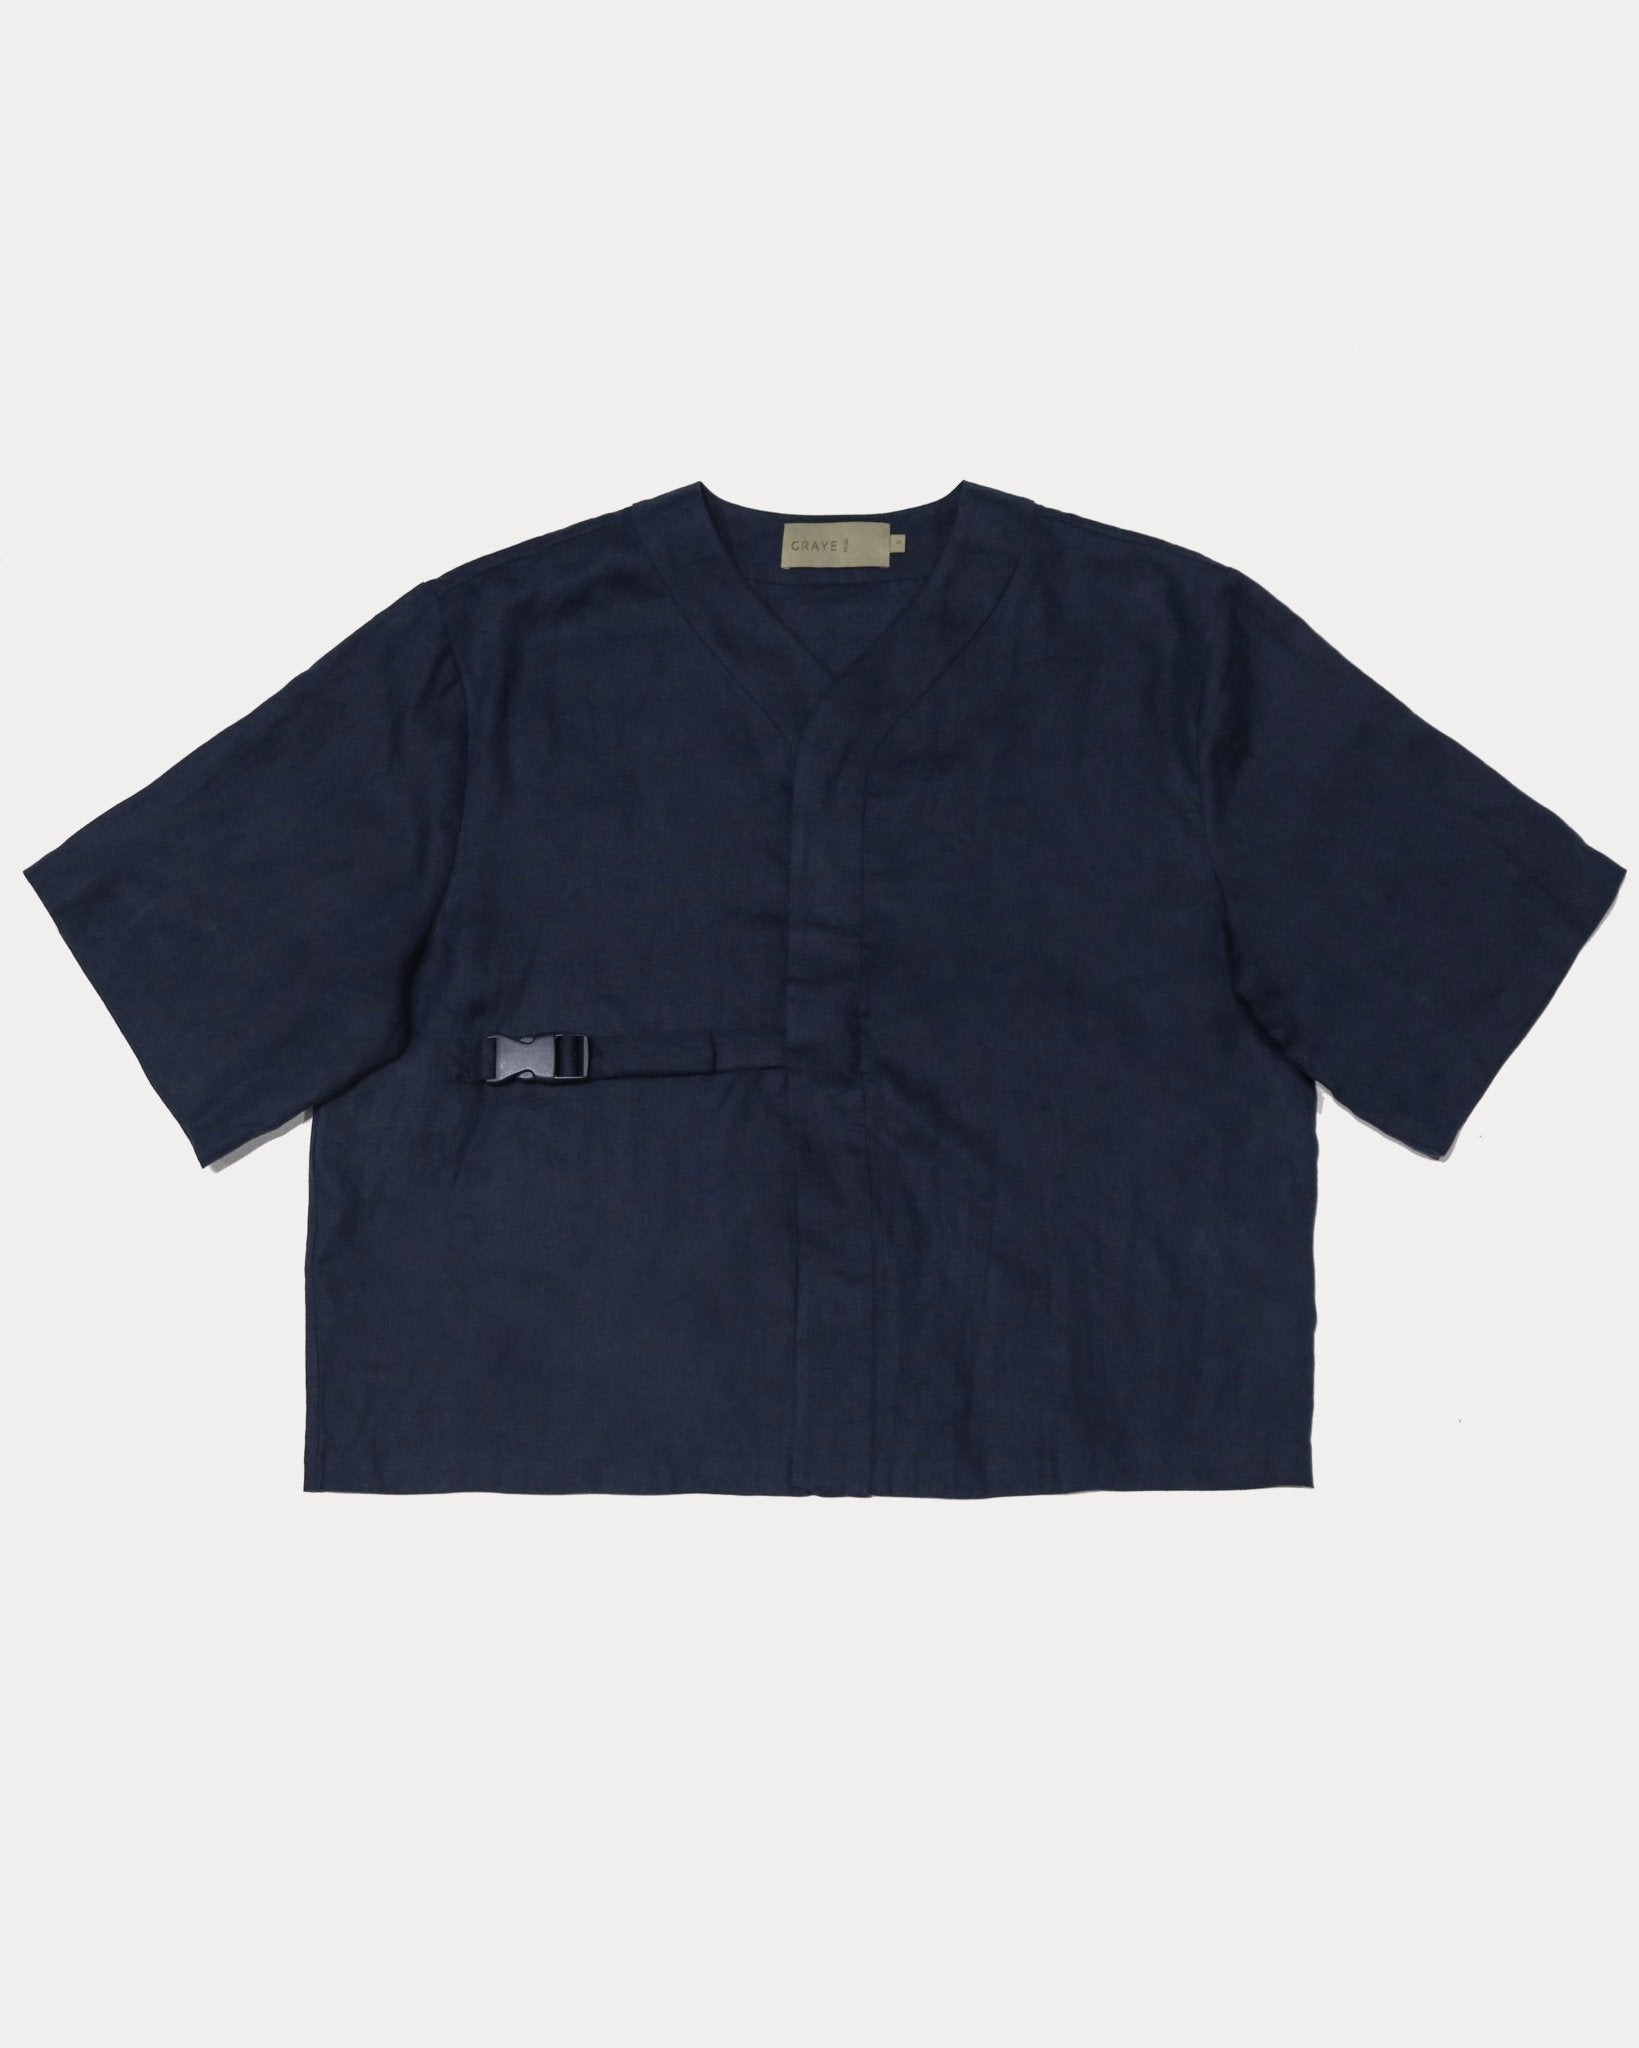 Shōto Linen Baseball Collar Top - Navy Blue - G R A Y E